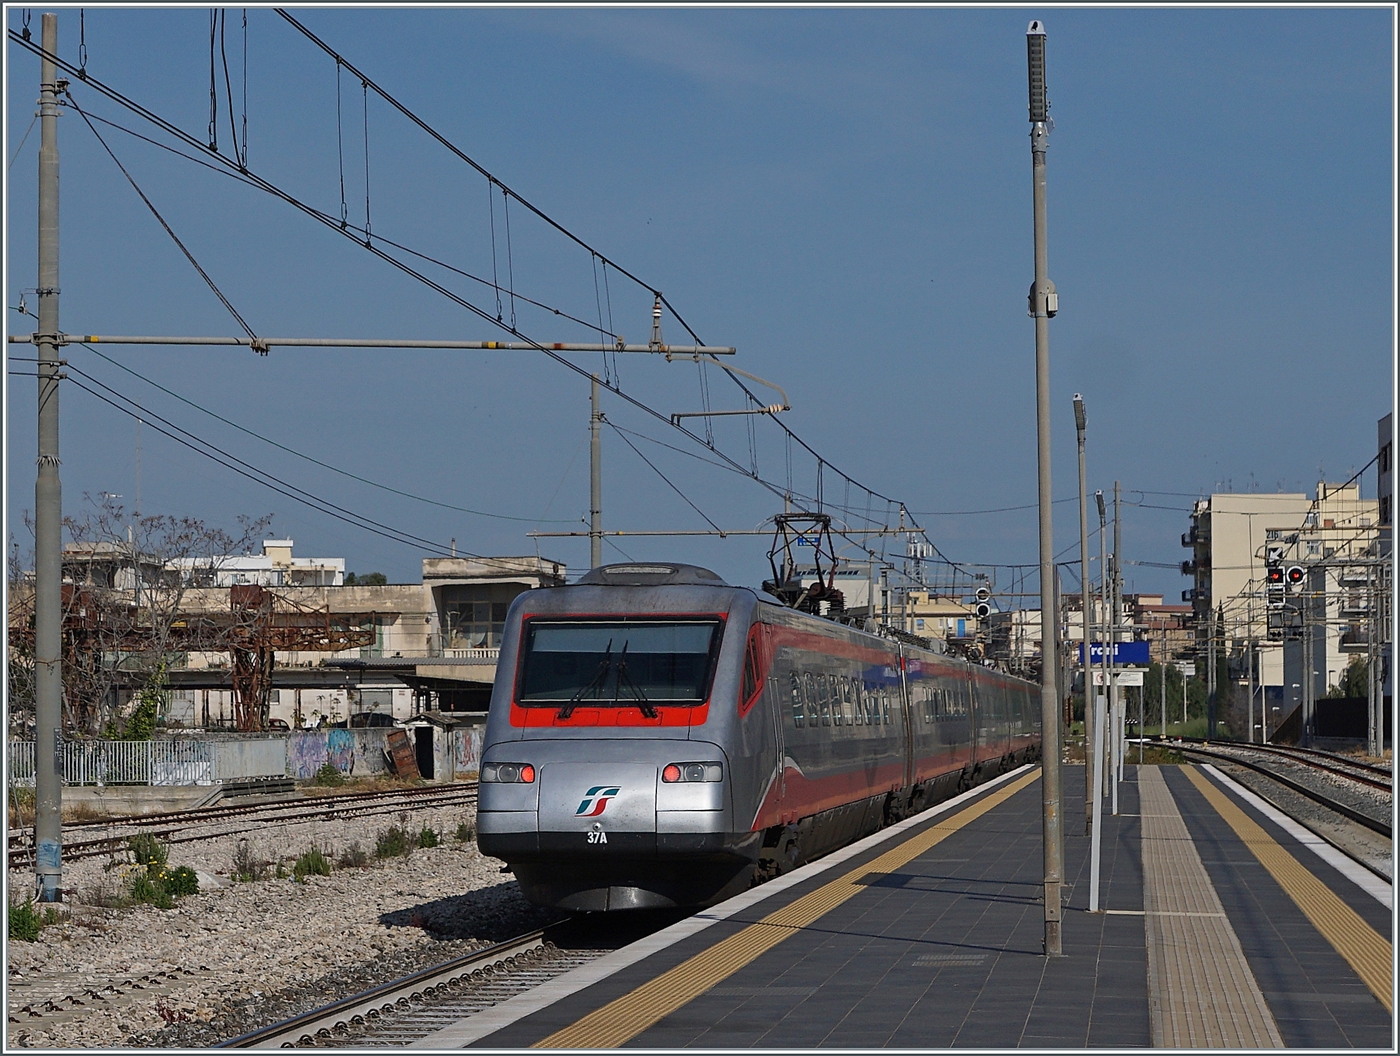 Der FS Trenitalia ETR 485 037 ist als Frecciargento 8306 in Trani bei der Durchfahrt auf dem Weg von Lecce nach Roma Termini.

23. April 2023 